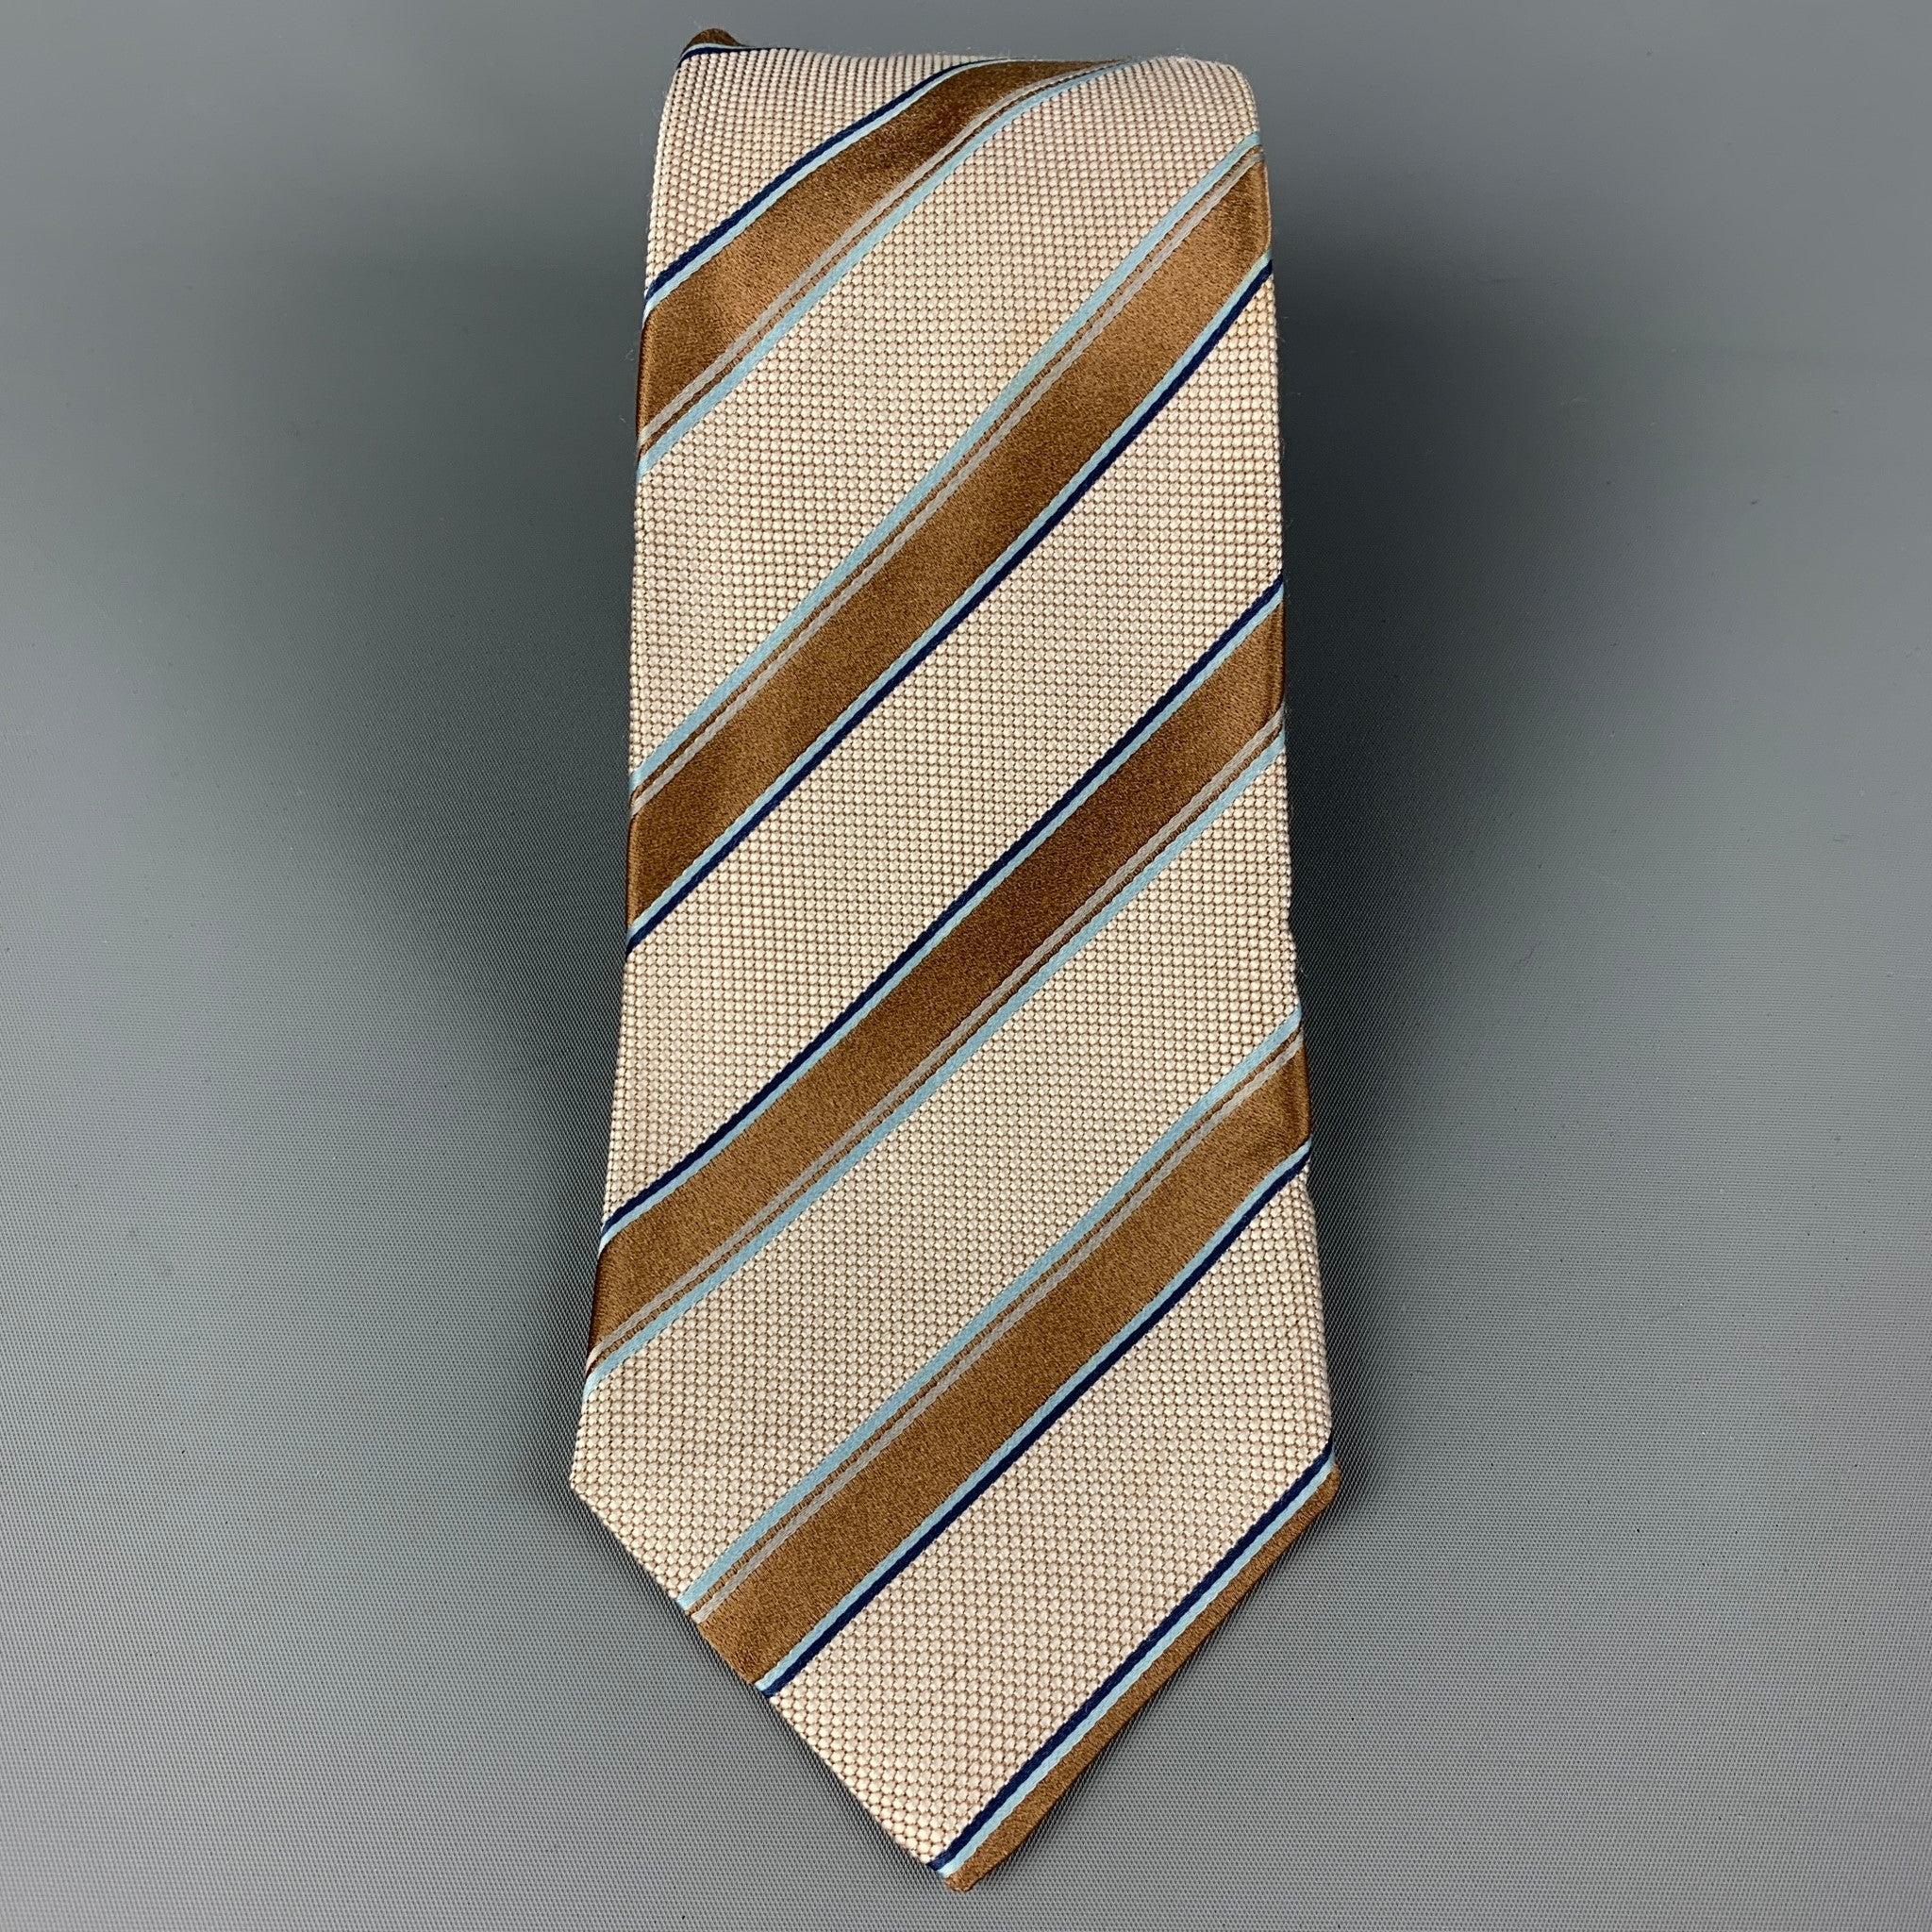 La cravate KITON est en soie beige et blanche à rayures diagonales. Fabriqué en Italie. Très bon état d'usage.largeur : 3.75 pouces  Longueur : 61 pouces 


  
  
 
Référence Sui Generis : 120374
Catégorie : Cravate
Plus de détails
    
Marque : 